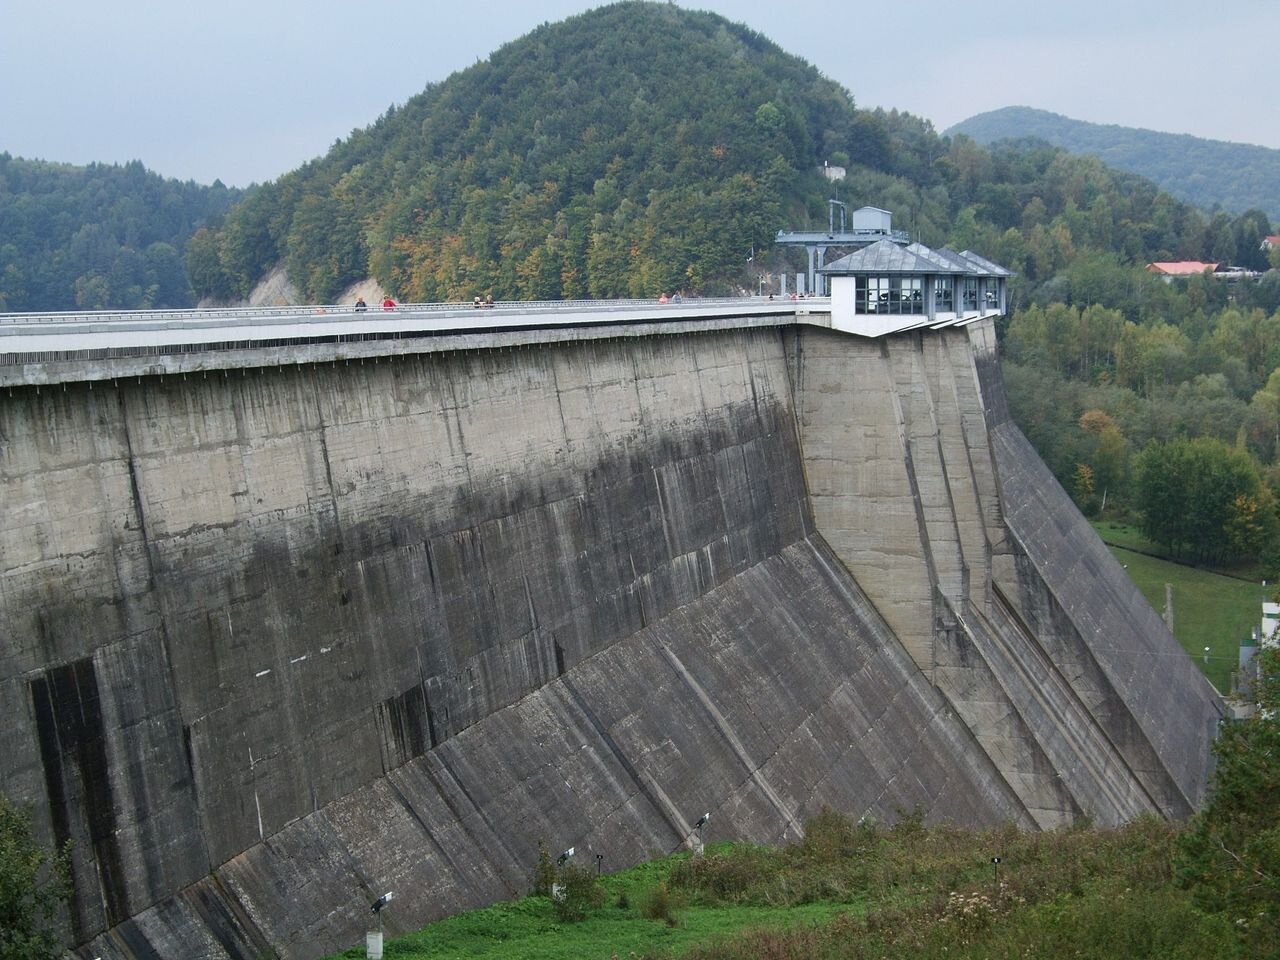 Zdjęcie przedstawia zaporę Zbiornika Solińskiego. Zapora jest wysoka i zbudowana z betonu. Na jej szczycie znajduje się budynek. W tle widoczny krajobraz górski. 